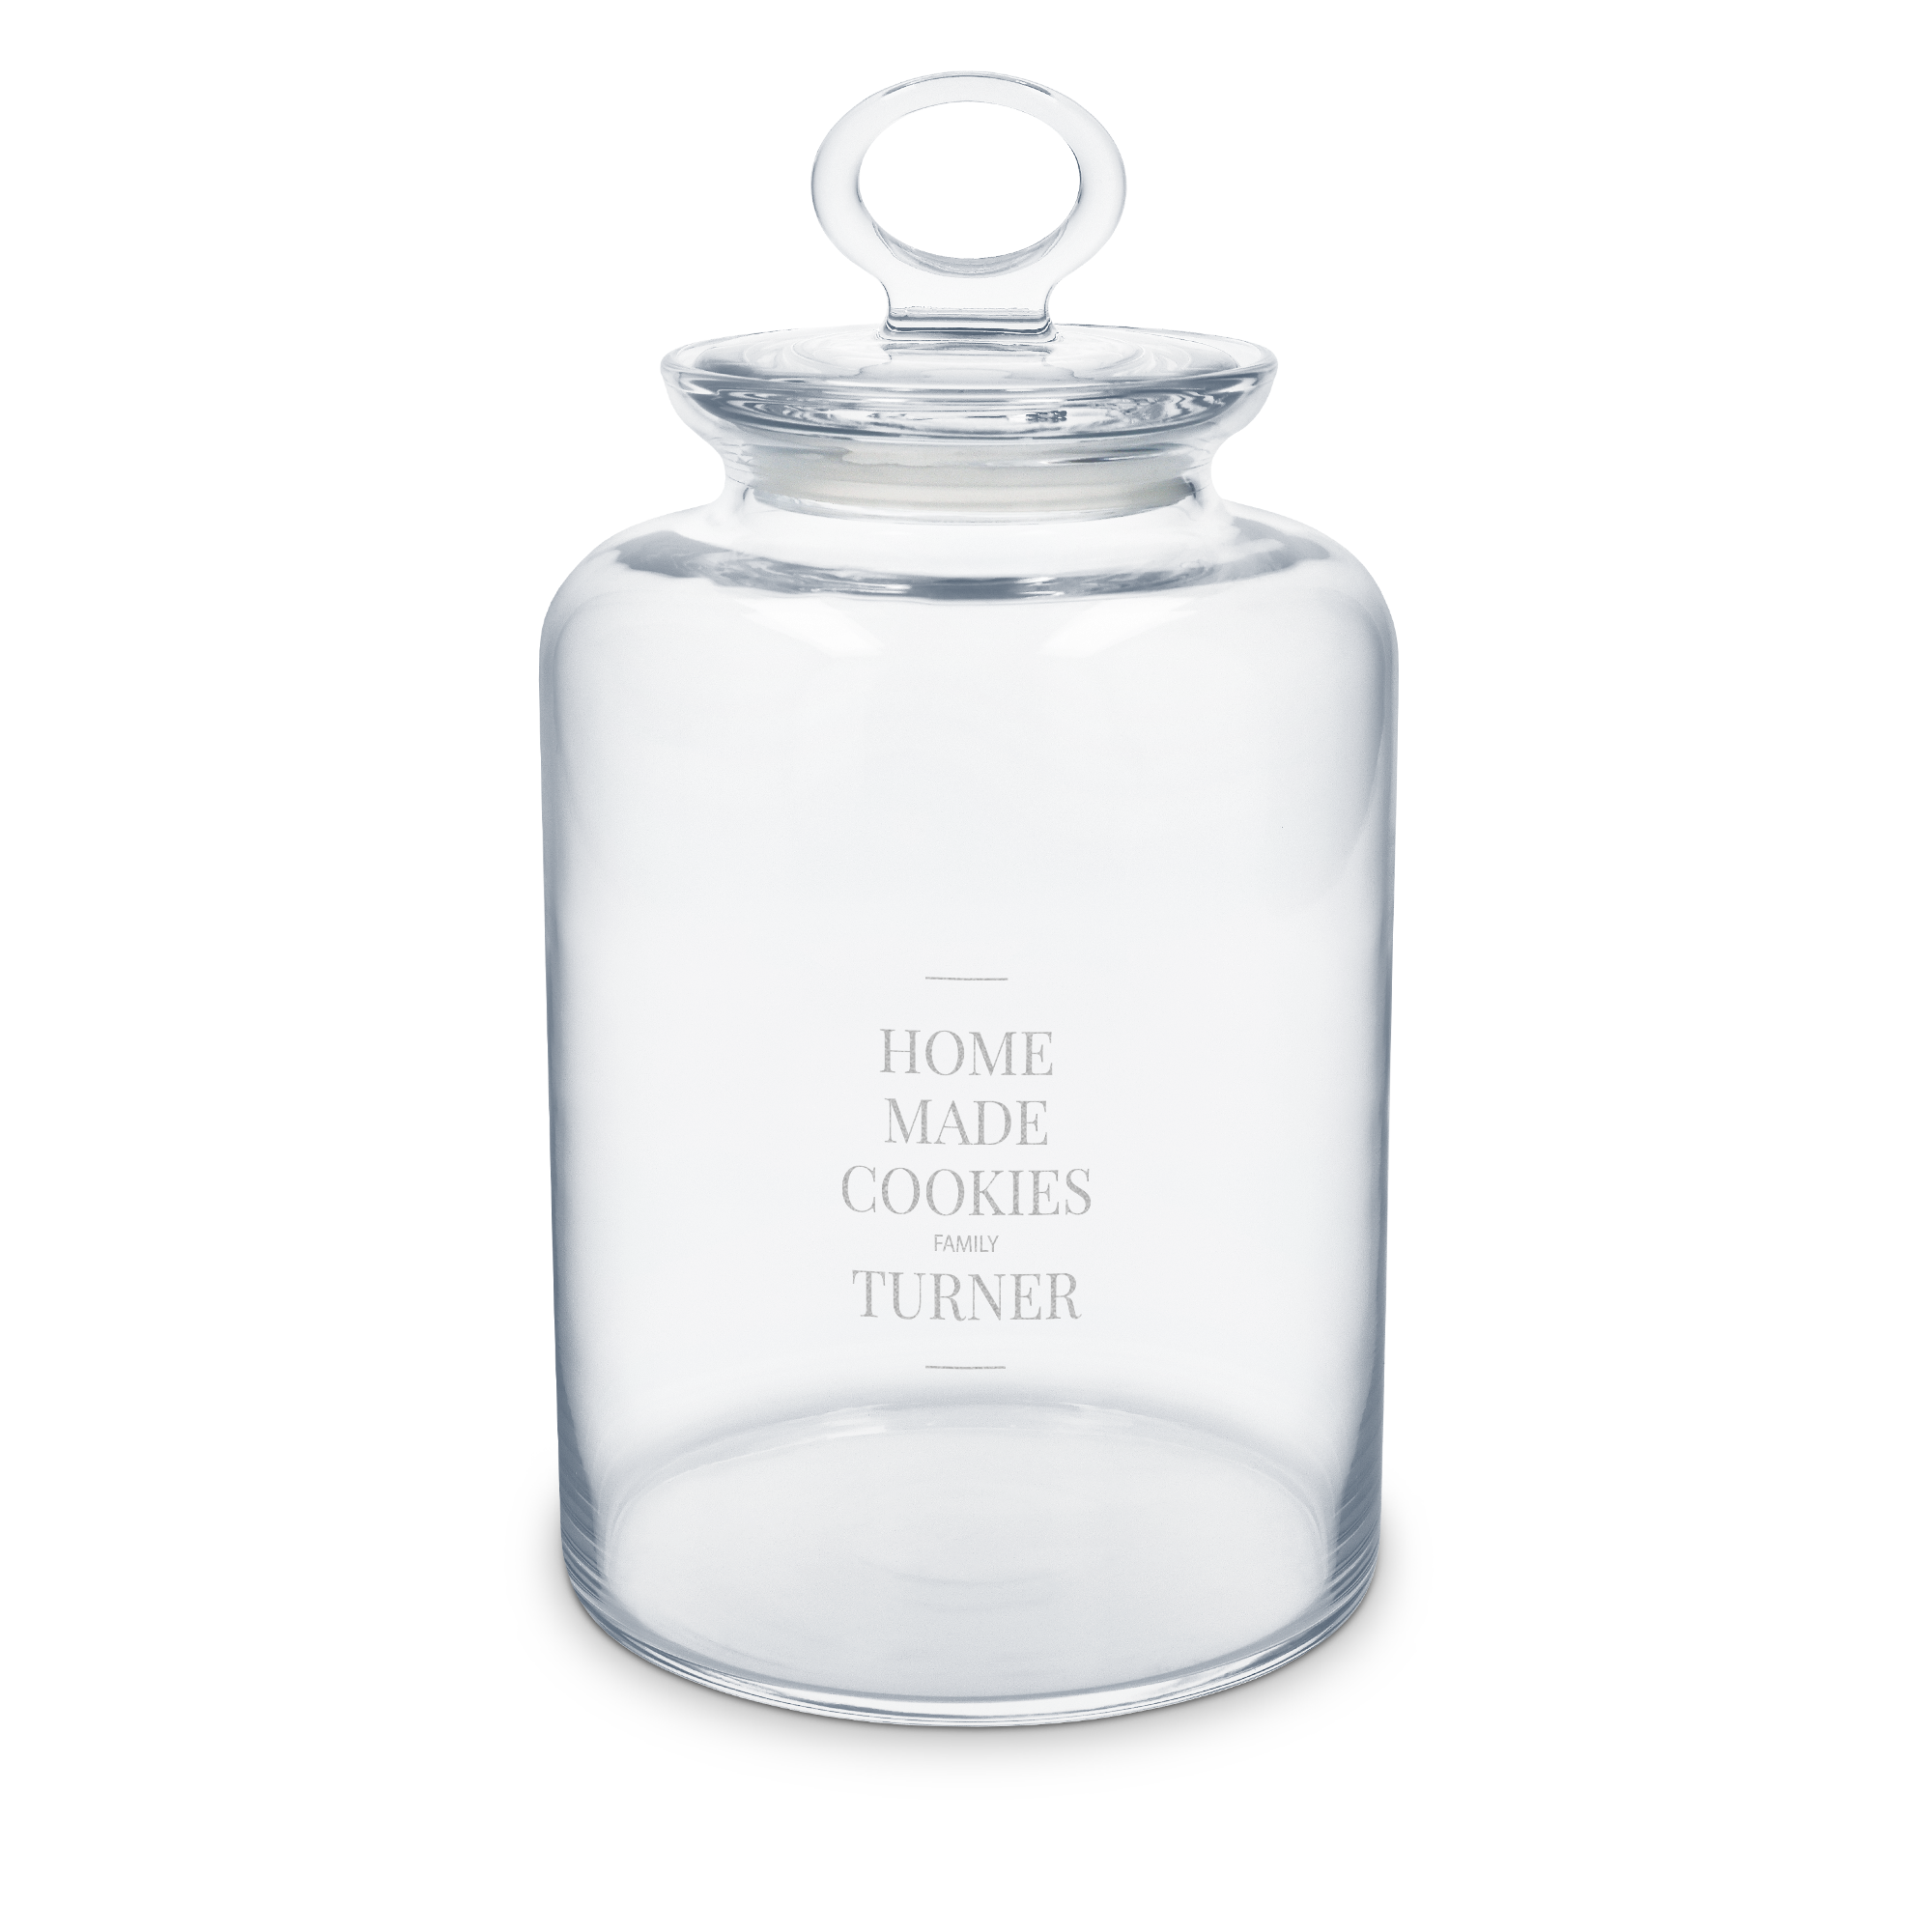 Personalised engraved glass cookie jar